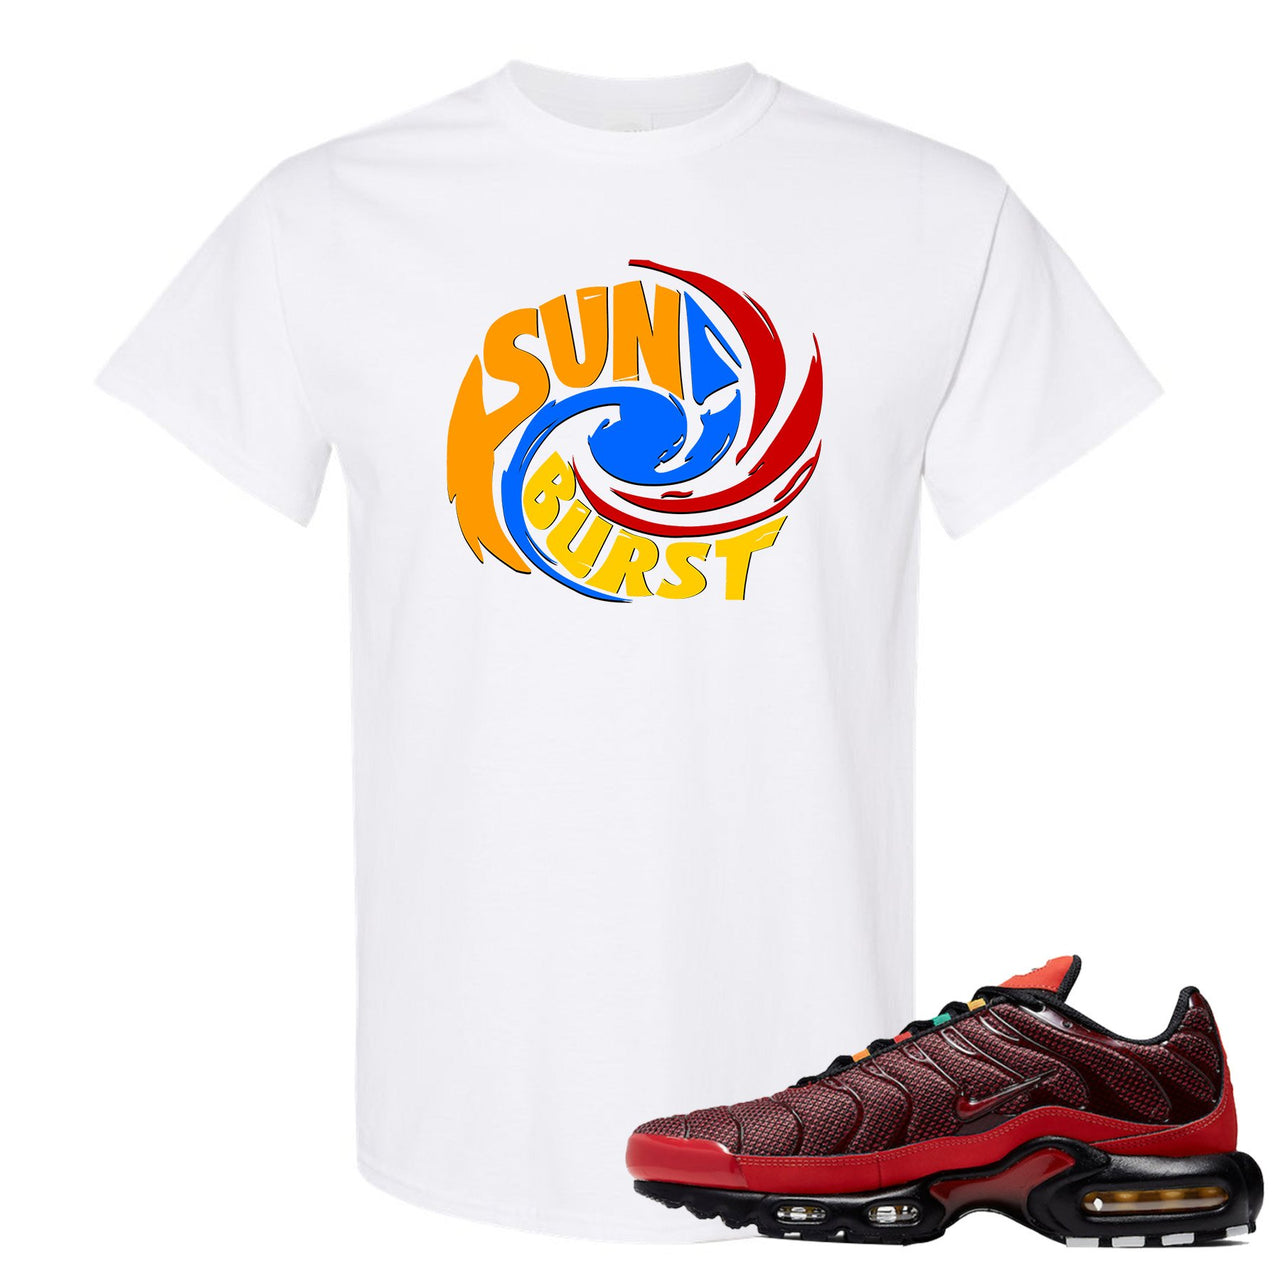 Sunburst Pluses T Shirt | Sunburst Hurricane, White